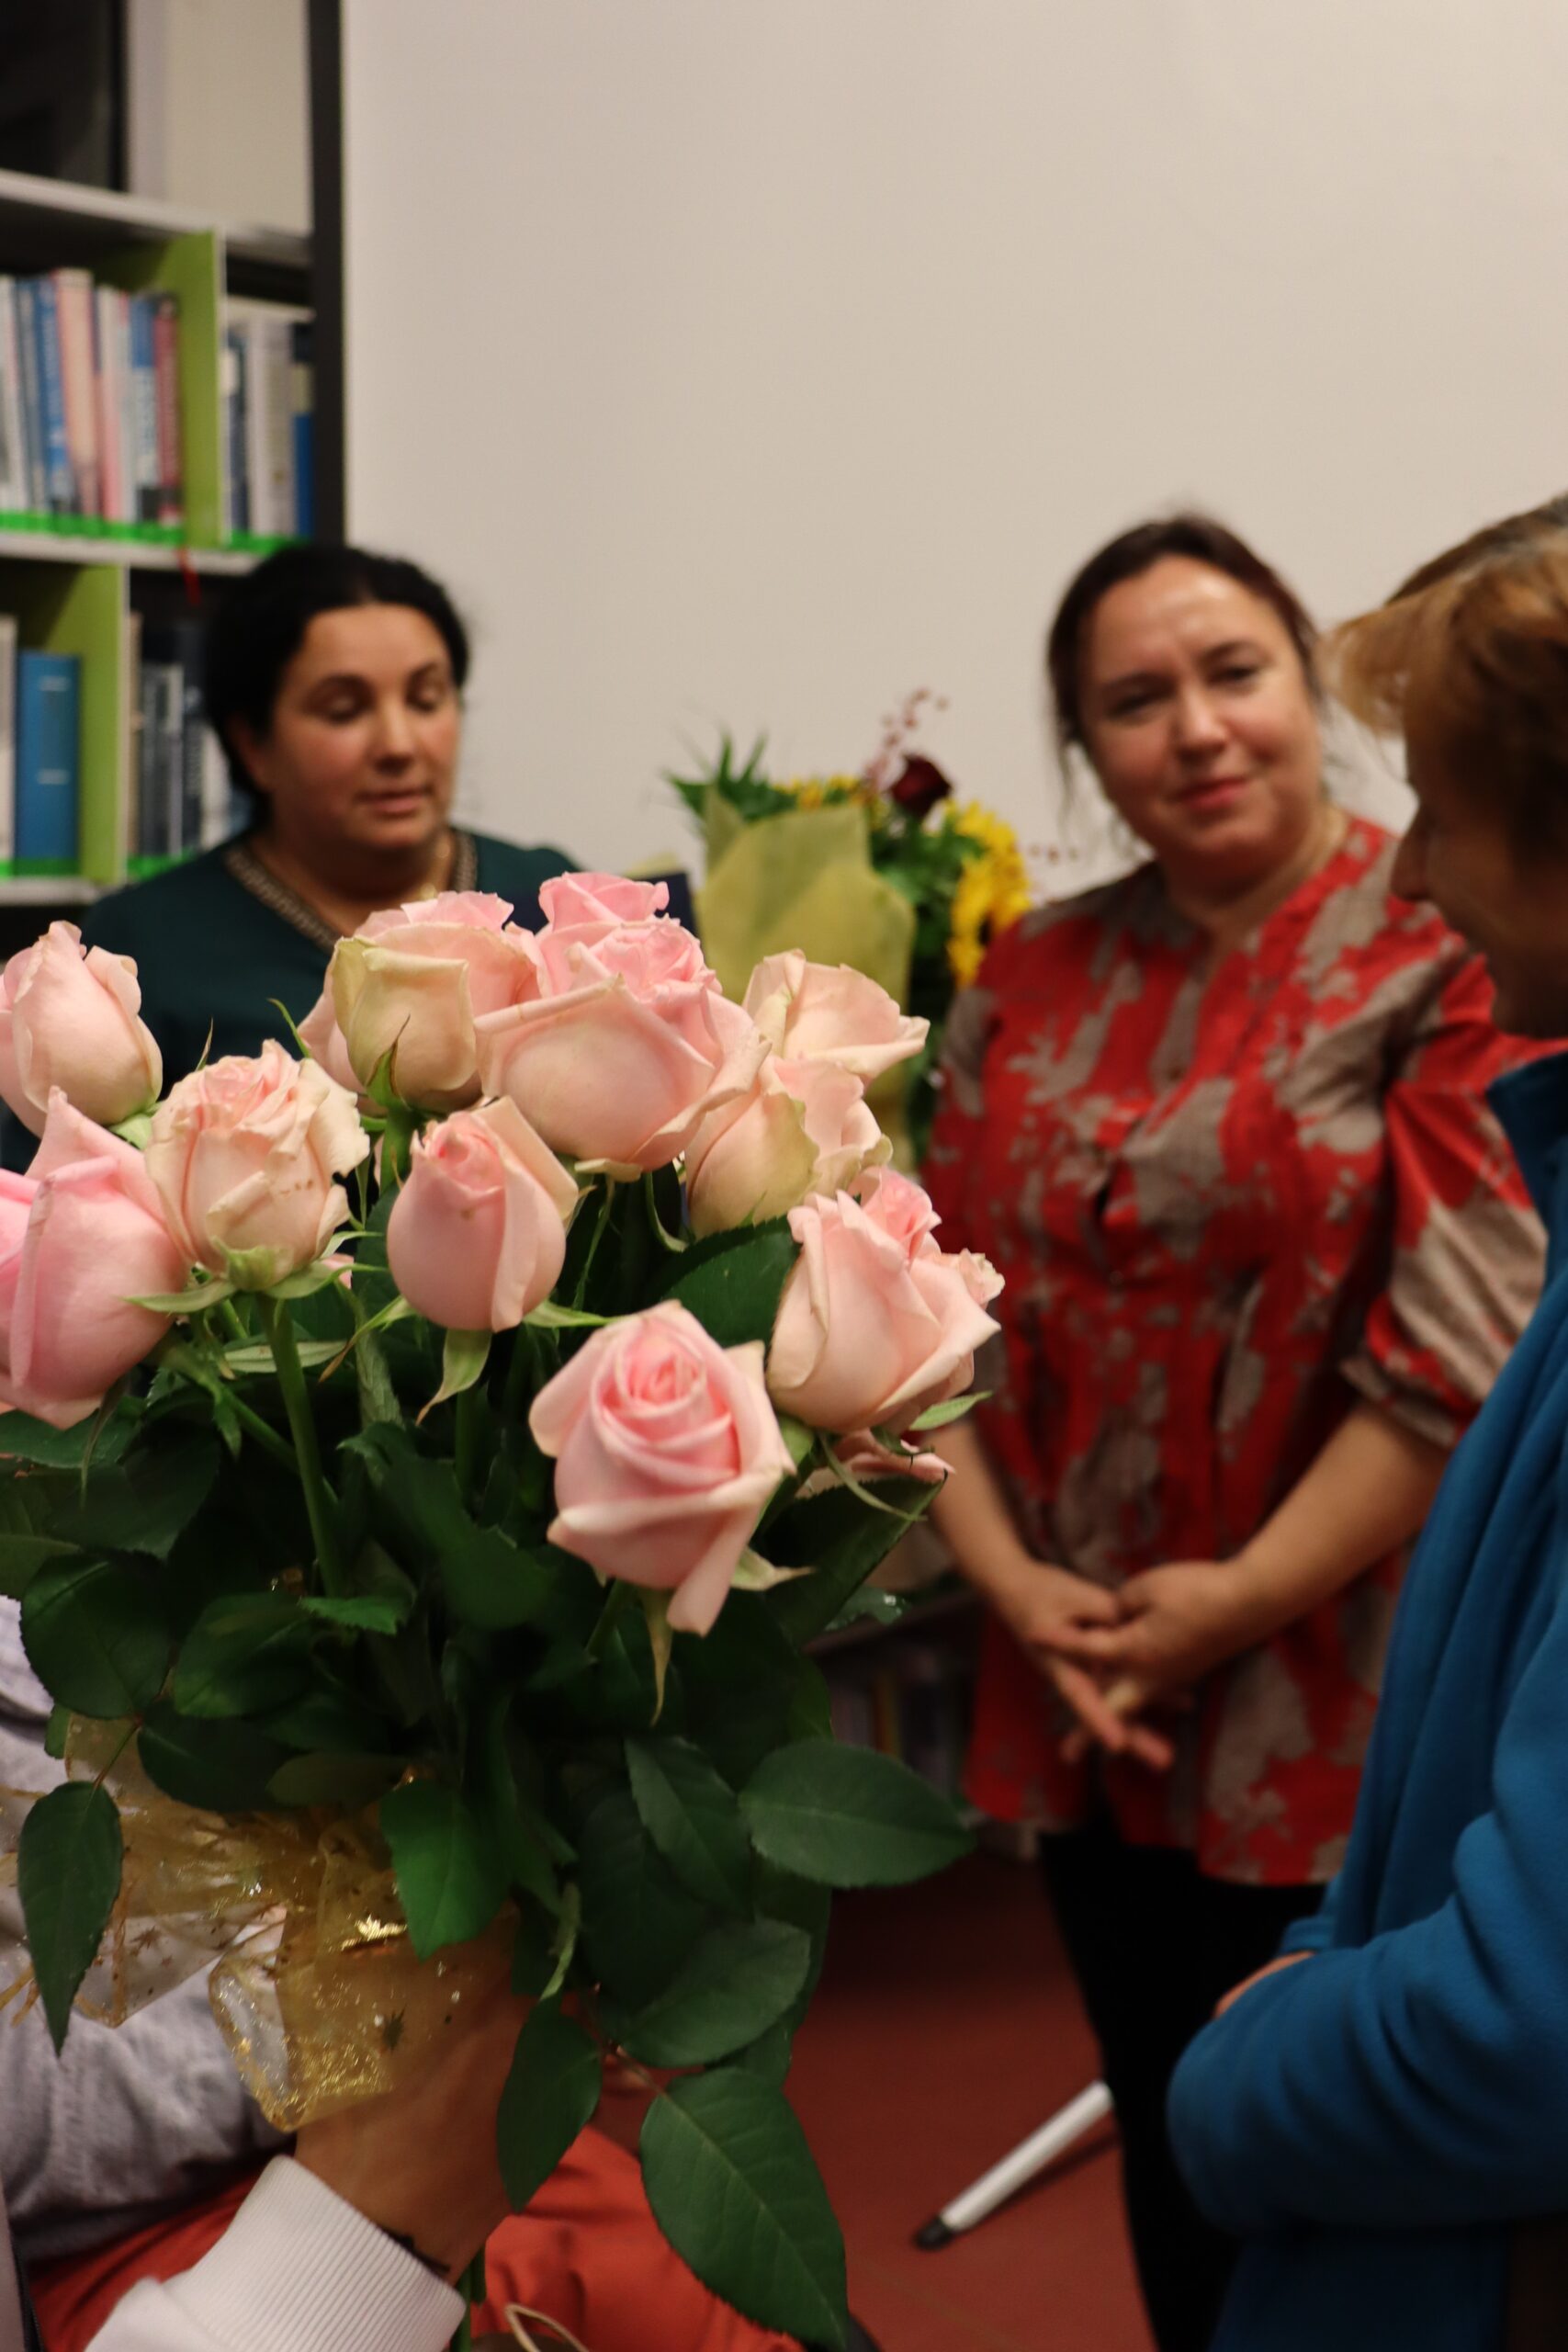 Na pierwszym planie wyciągnięta dłoń trzyma bukiet róż. Na drugim planie trzy kobiety rozmawiające ze sobą kobiety. Jedna z kobiet stojąca po prawej stronie trzyma w dłoniach bukiet kwiatów.